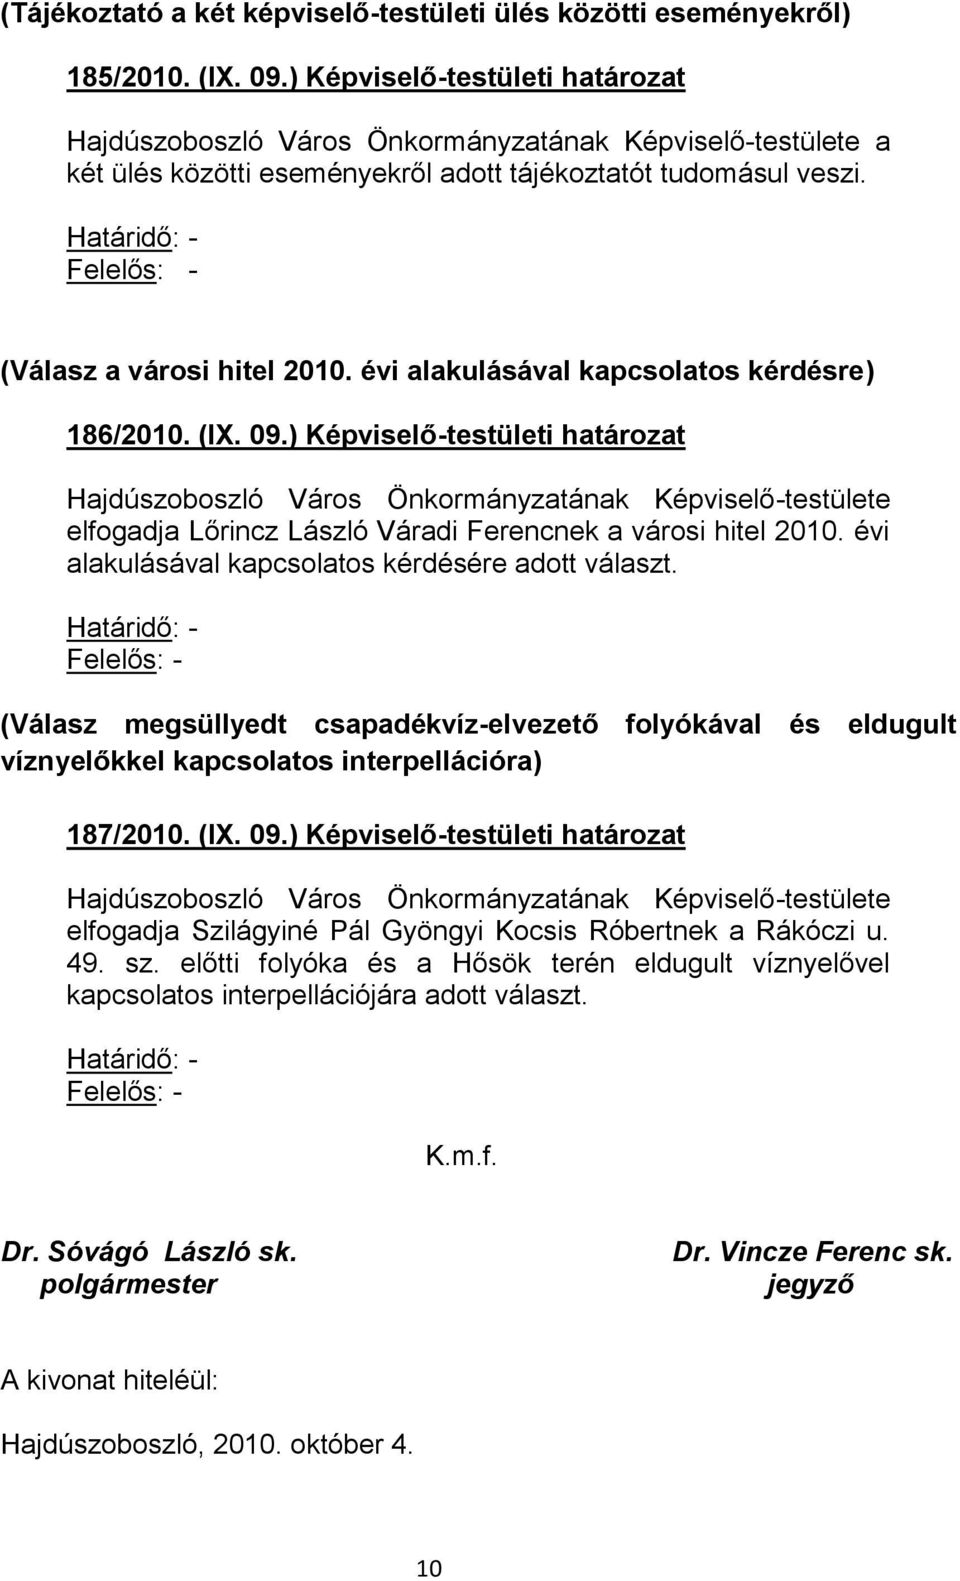 ) Képviselő-testületi határozat Hajdúszoboszló Város Önkormányzatának Képviselő-testülete elfogadja Lőrincz László Váradi Ferencnek a városi hitel 2010.